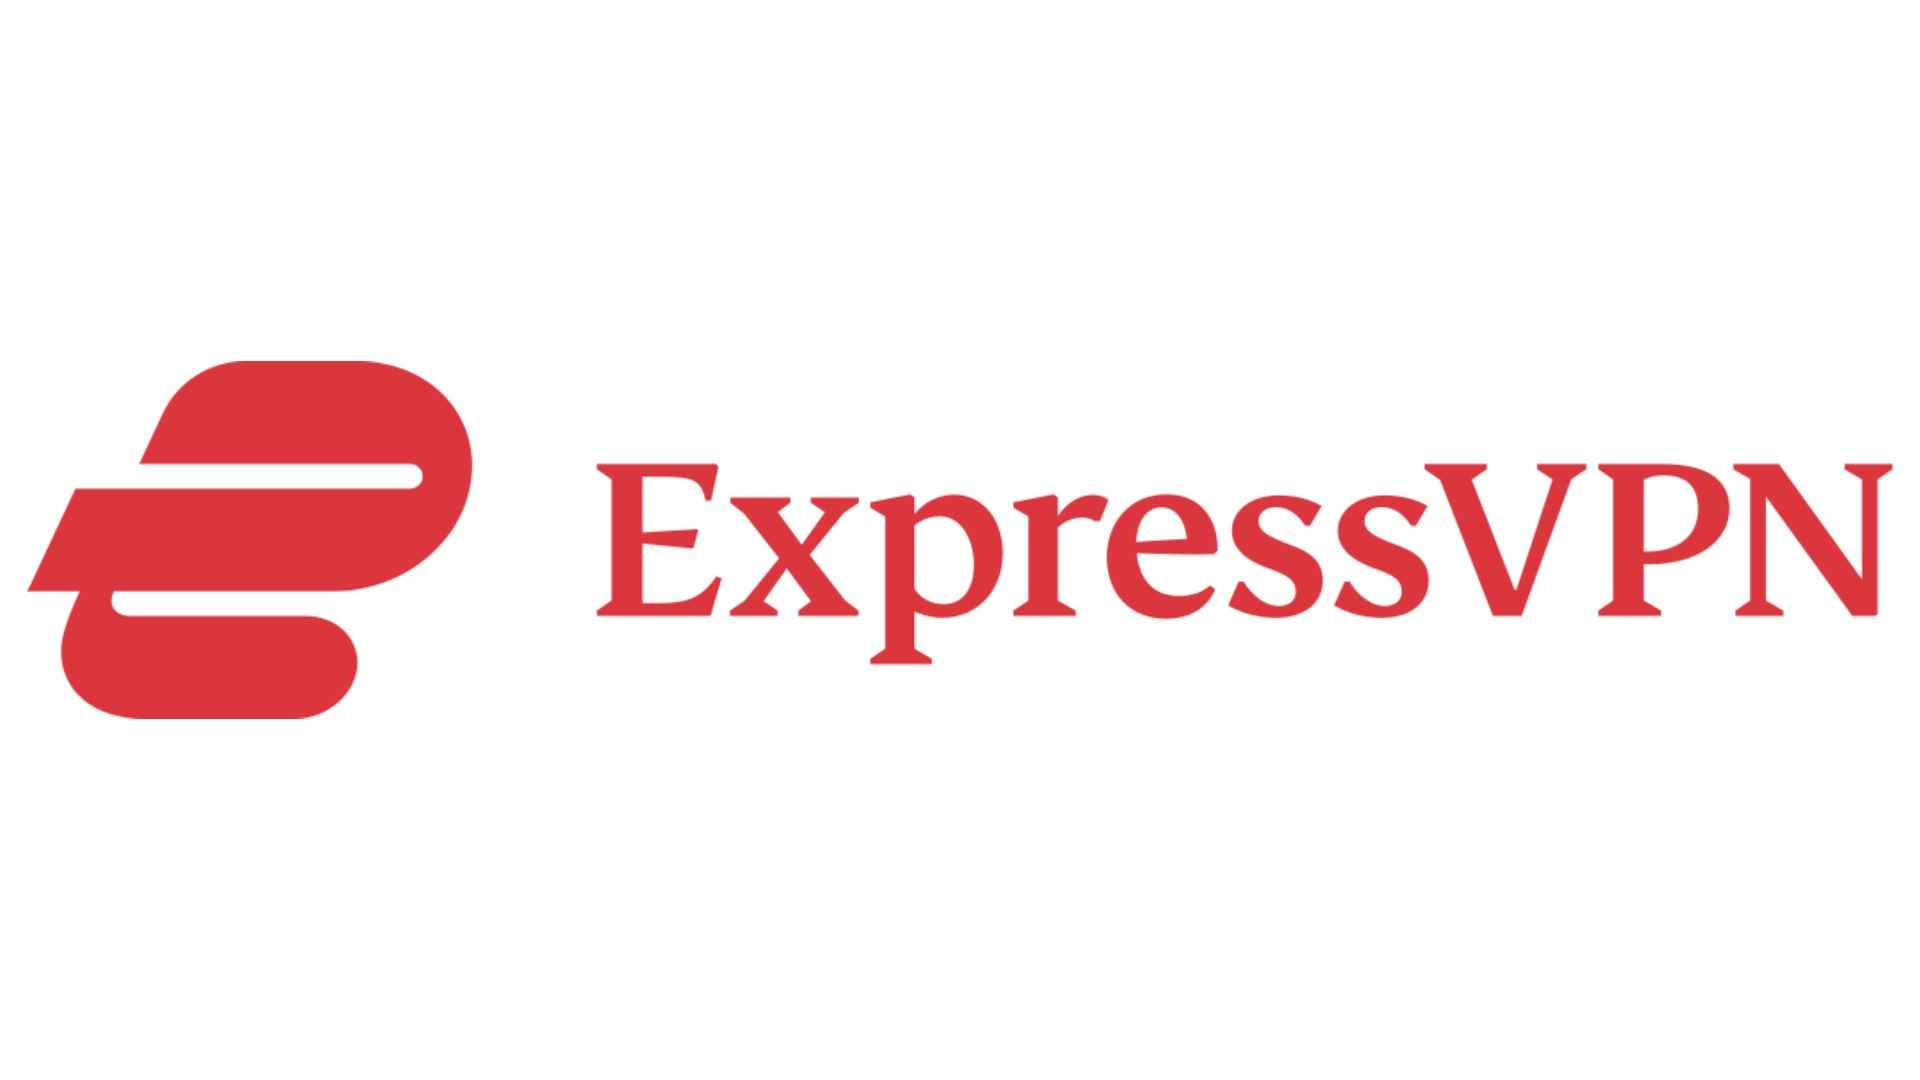 VPN tarayıcı uzantıları: resim, en iyi Safari VPN olan ExpressVPN'in logosunu gösterir.